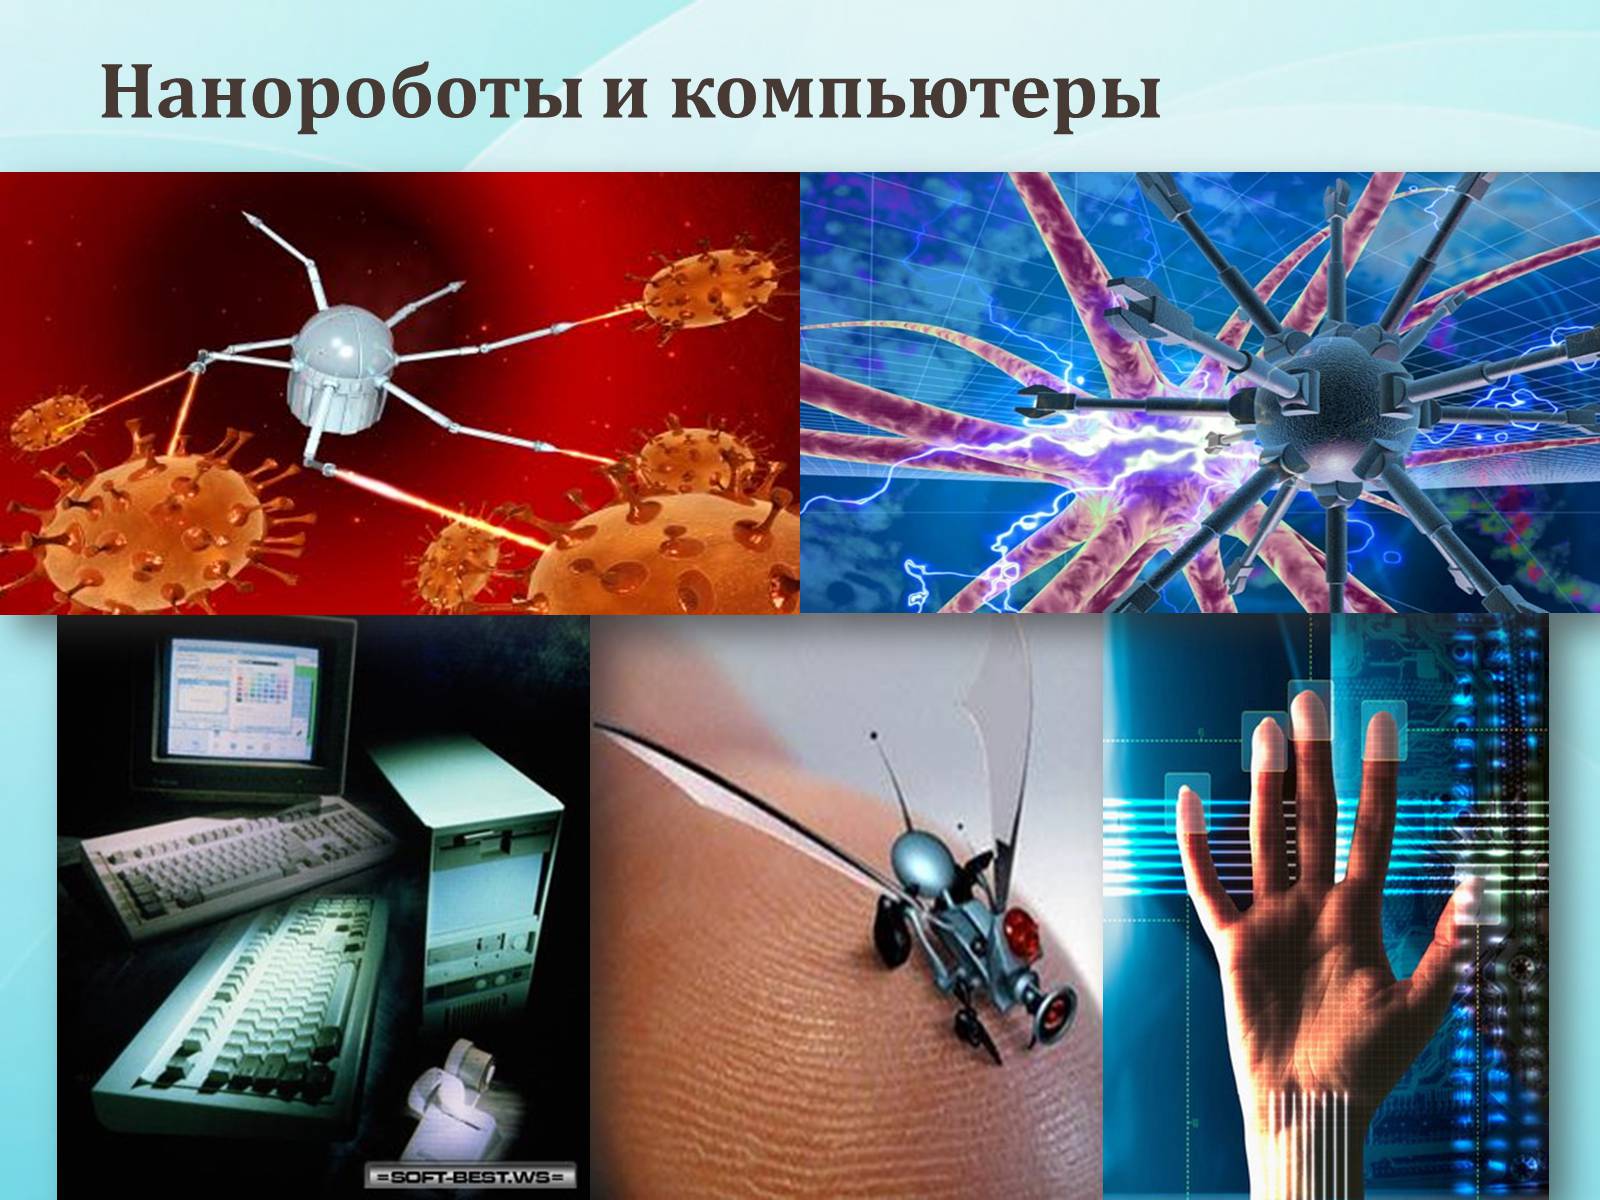 Про нанотехнологии. Изображения на тему нанотехнологии. Нанороботы в компьютерах. Нанотехнологии в быту. Нанотехнологии презентация.